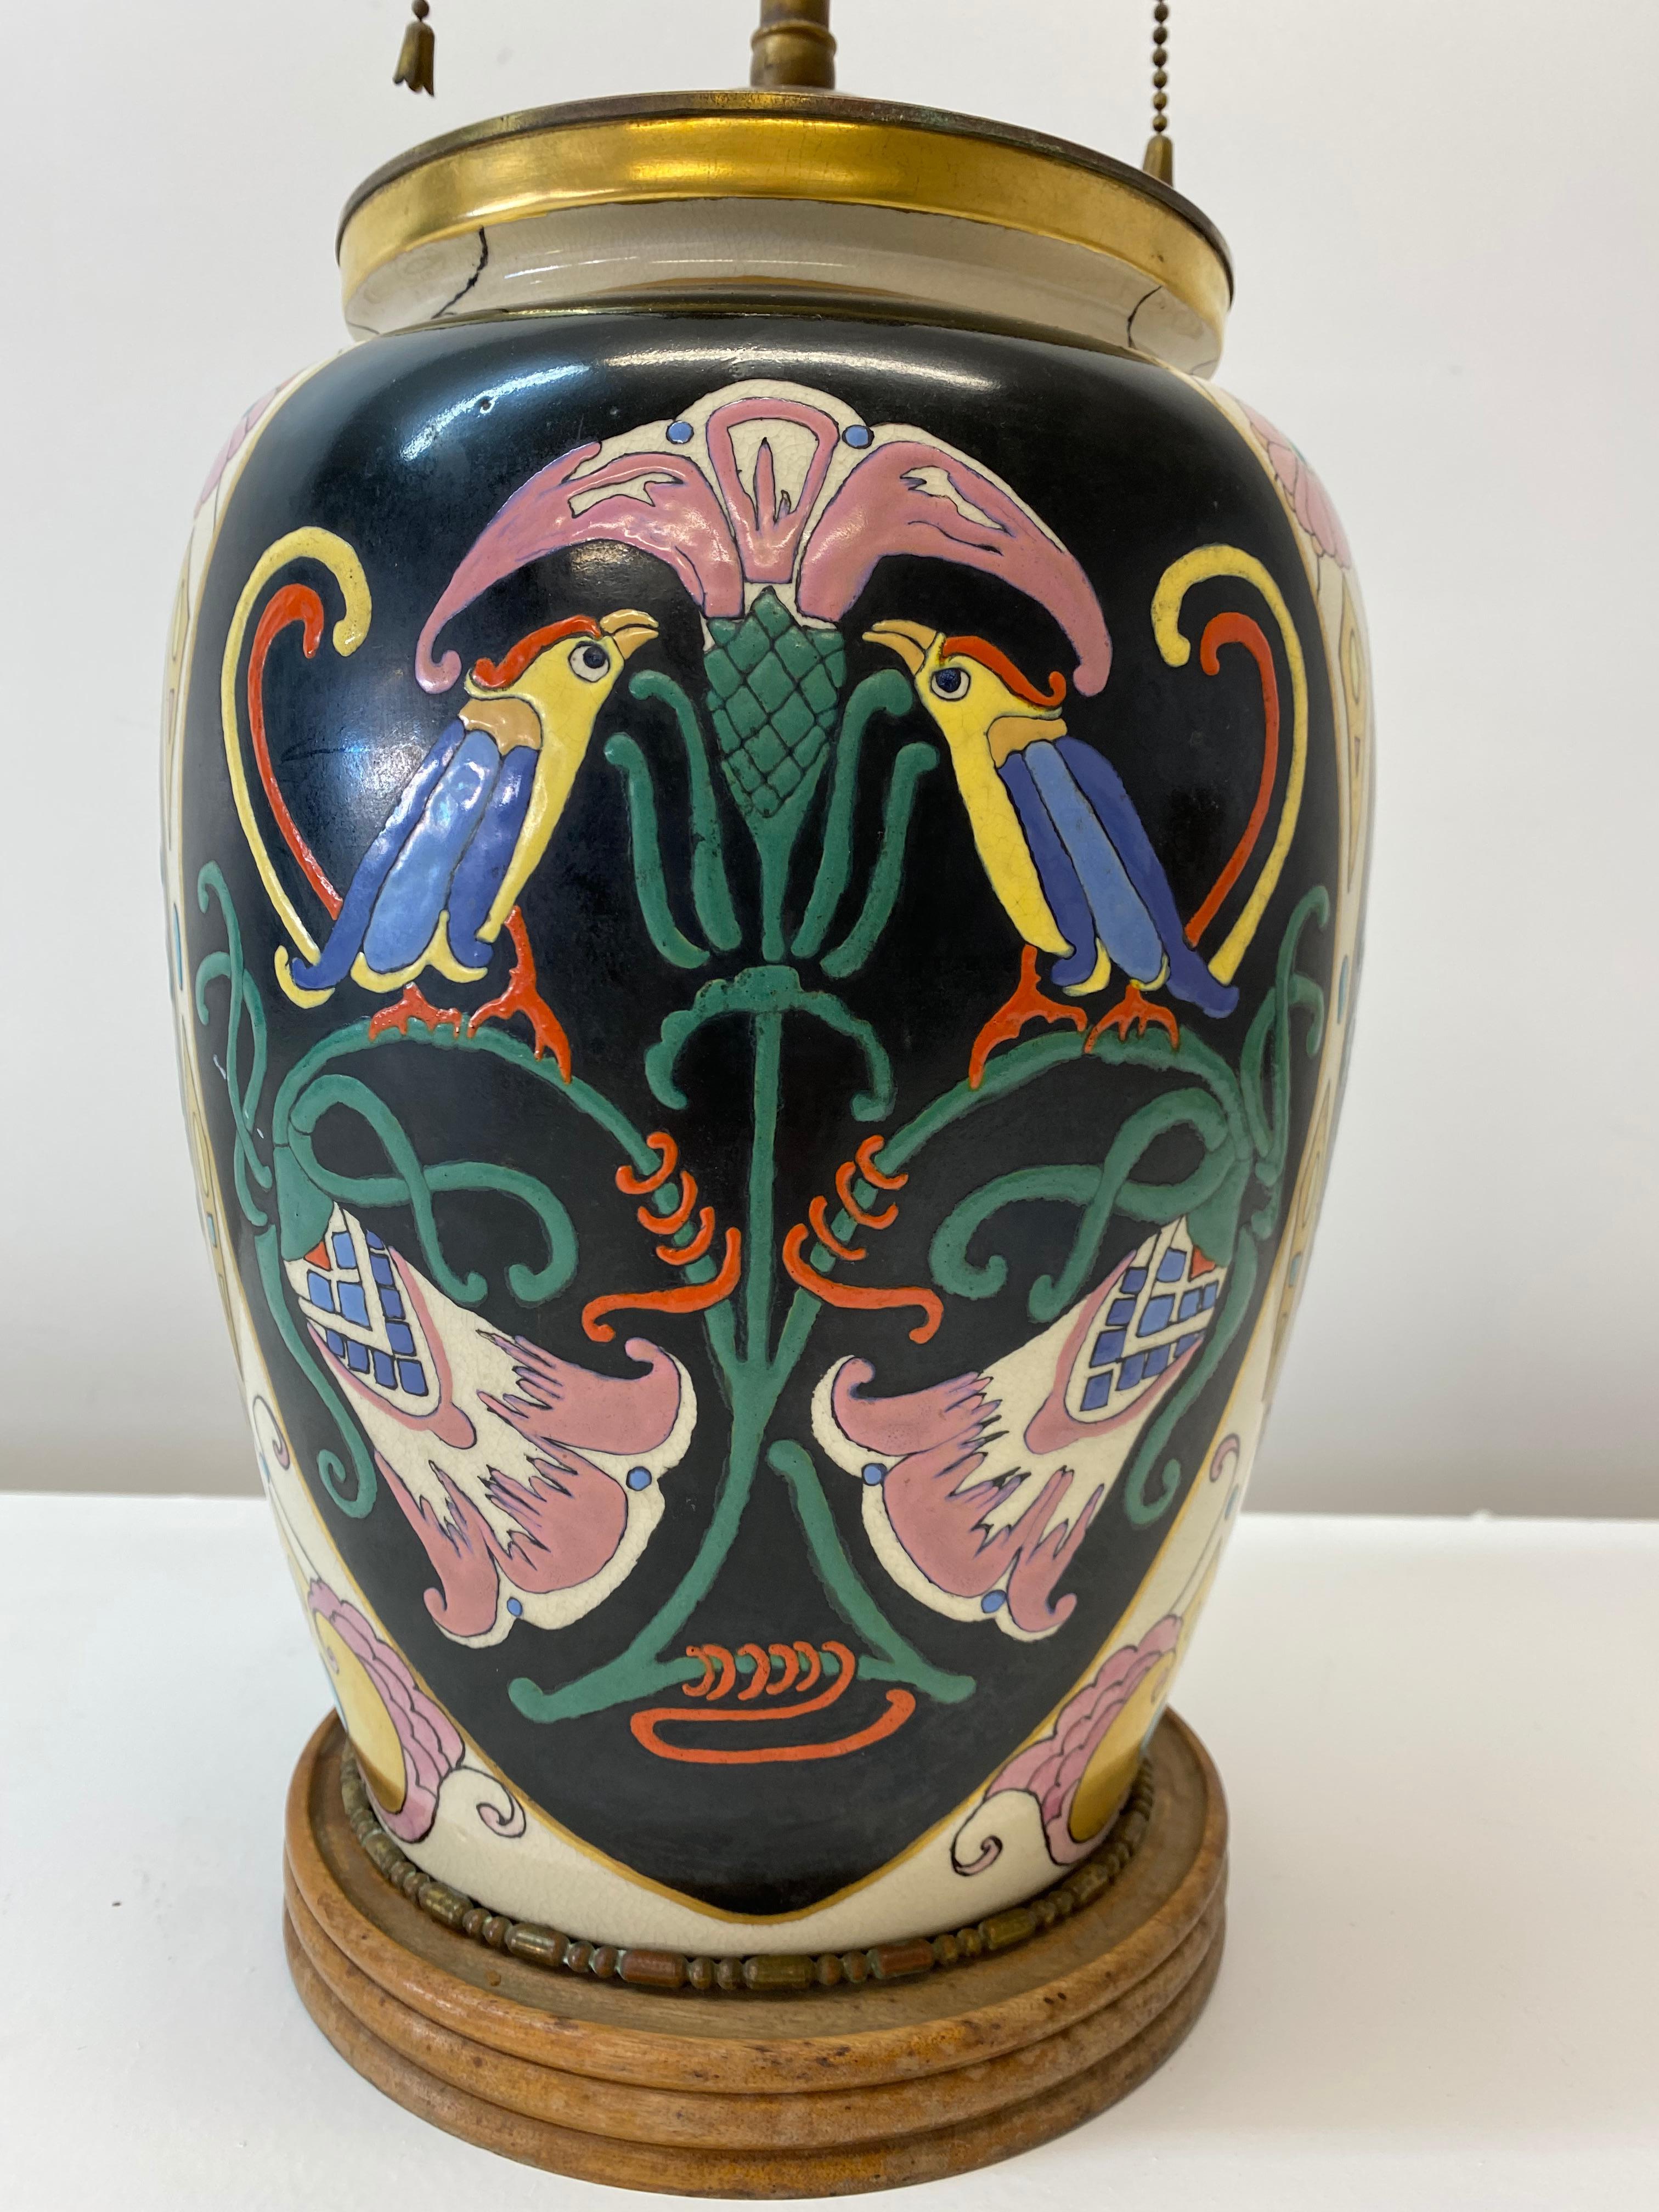 Antique lampe de table Art Nouveau vase en céramique conversion pour la restauration

Superbe vase Art nouveau peint à la main, vers 1890-1910

Le vase a été transformé en lampe de table, vers les années 1920-1930

Mesures : 7.5